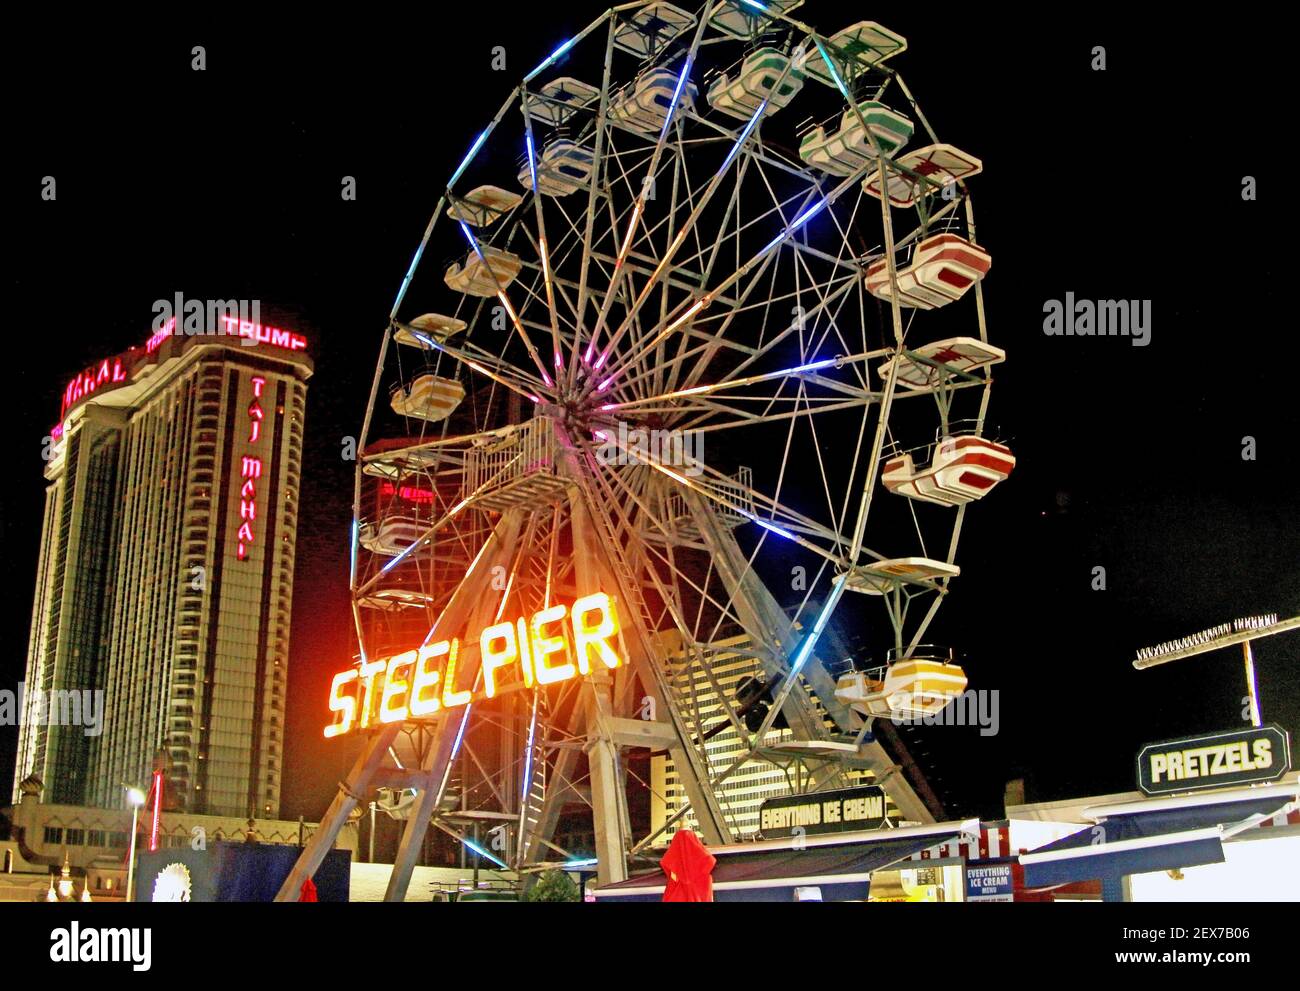 Atlantic City, New Jersey, États-Unis - 19 juillet 2015 : la roue de ferris Steel Pier sur la promenade d'Atlantic City la nuit avec des hôtels en arrière-plan à ni Banque D'Images